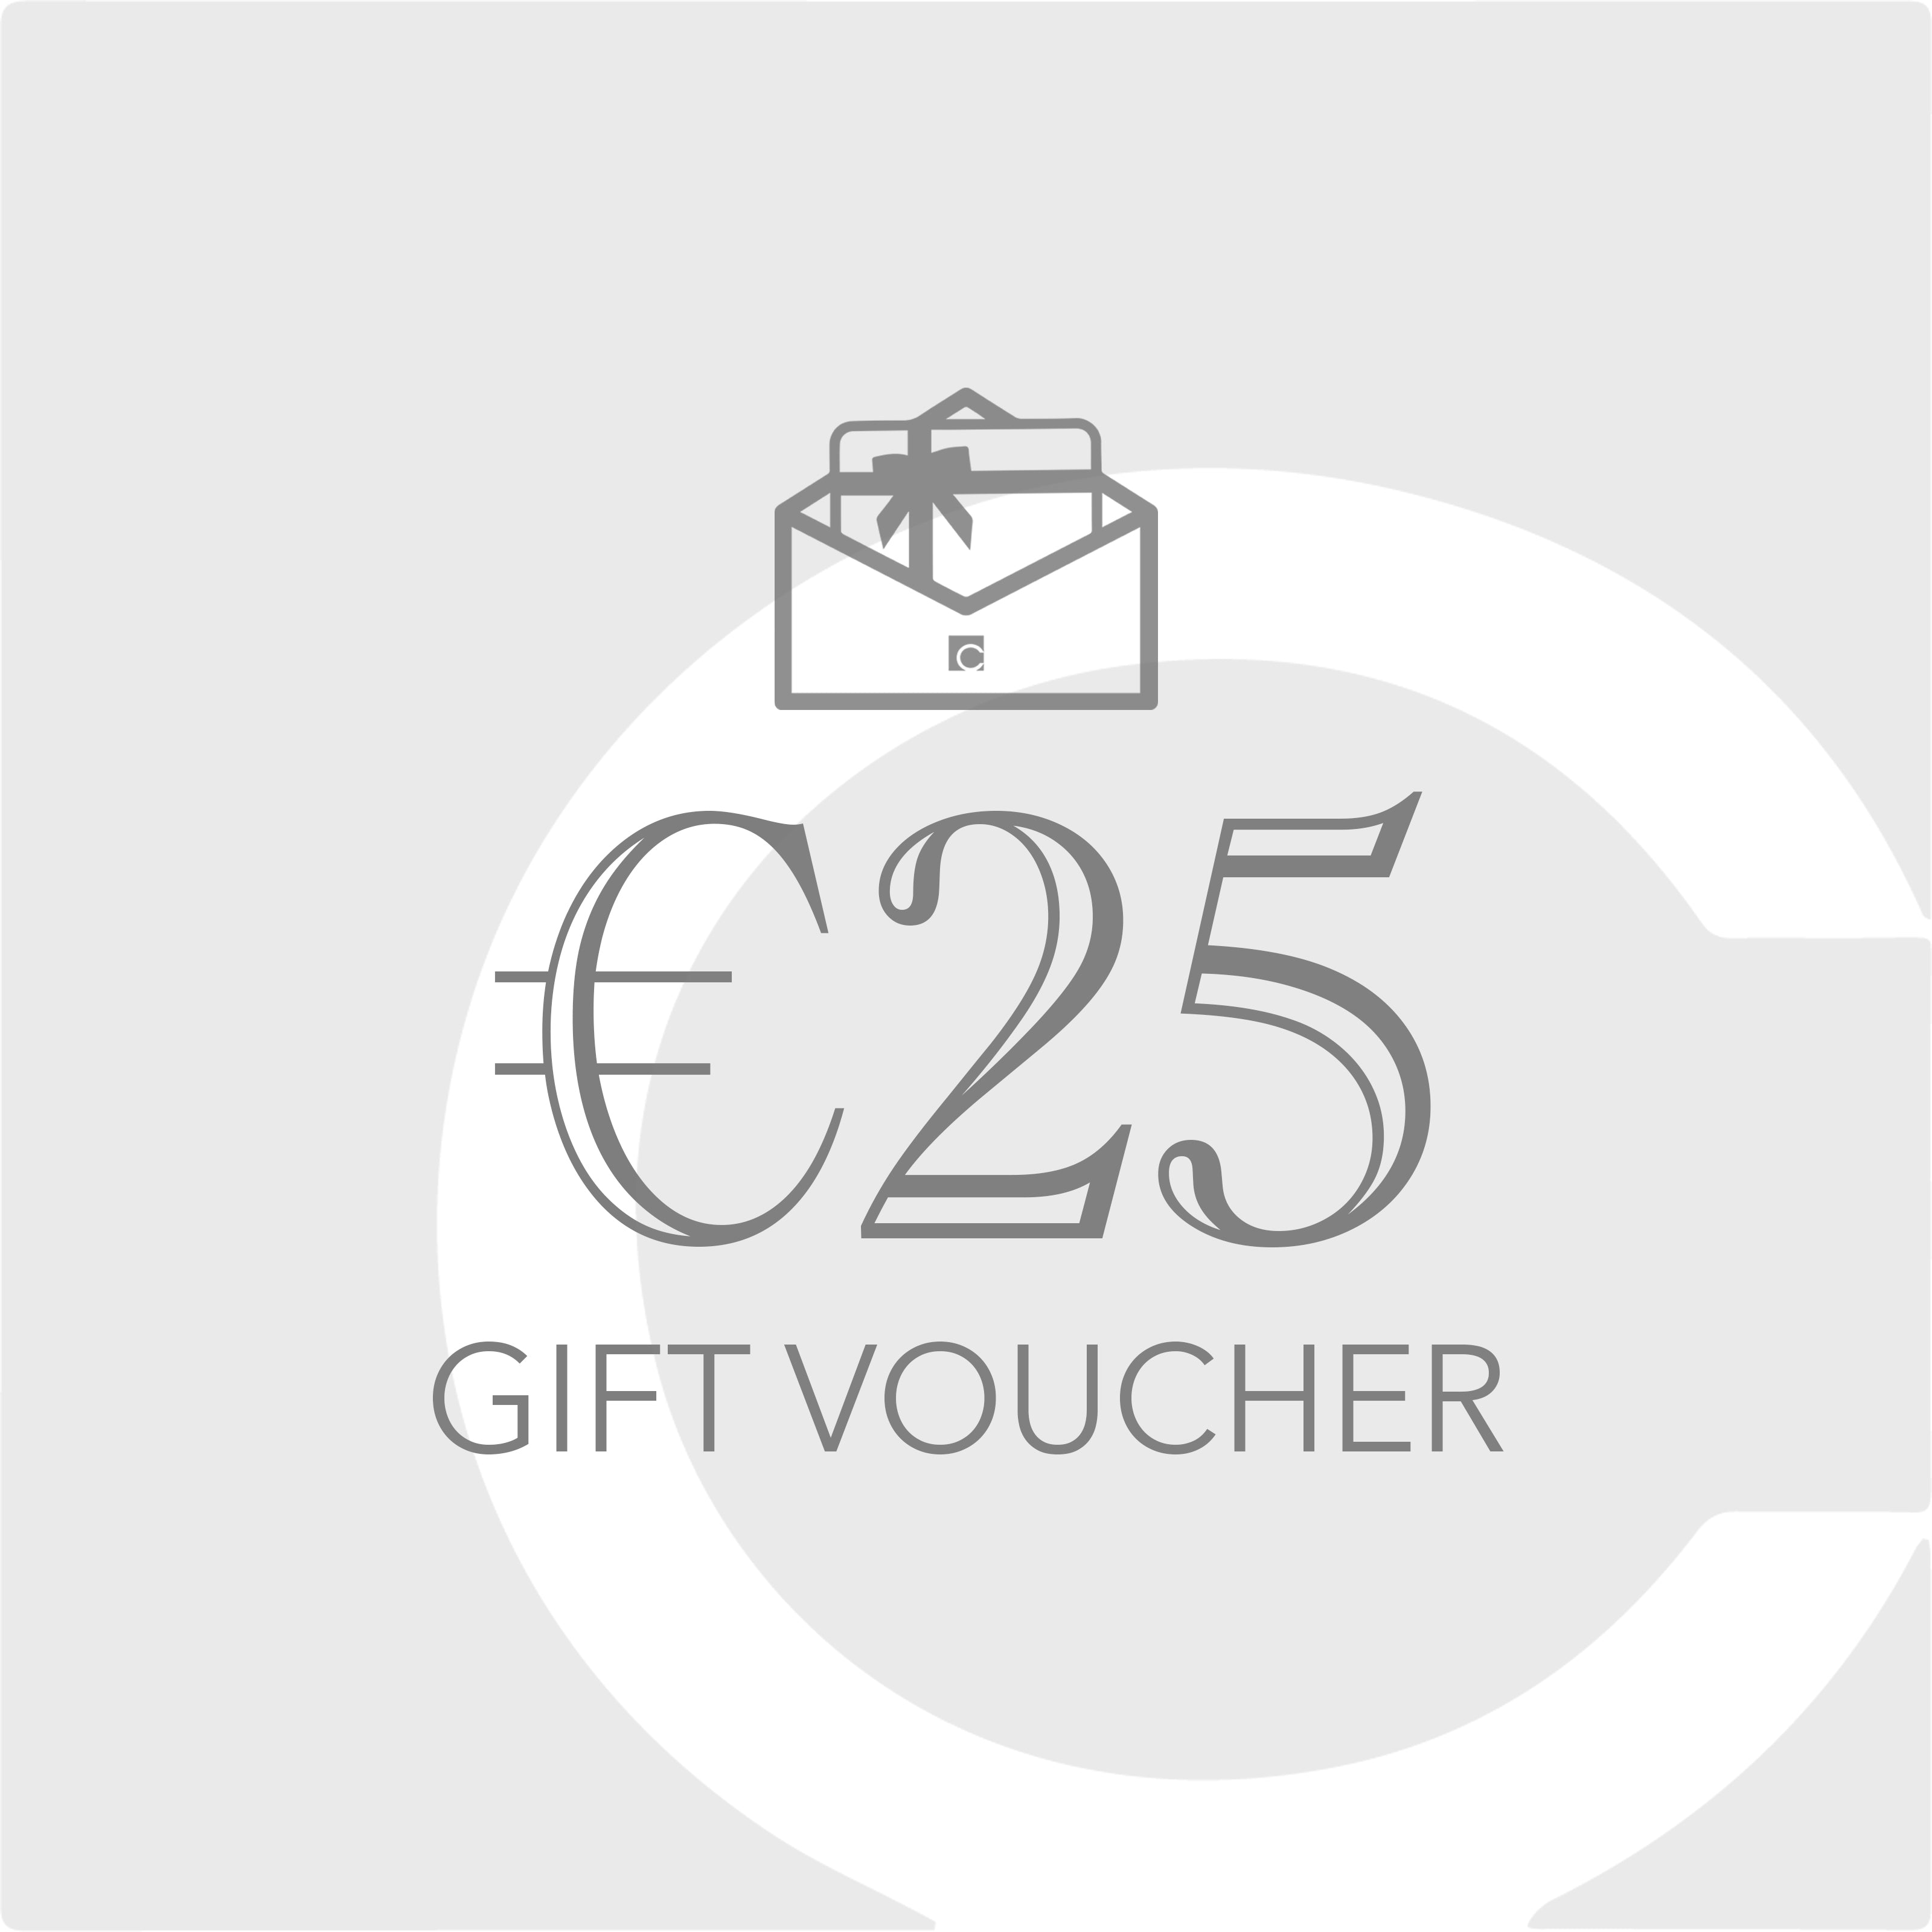 €25 Gift Voucher